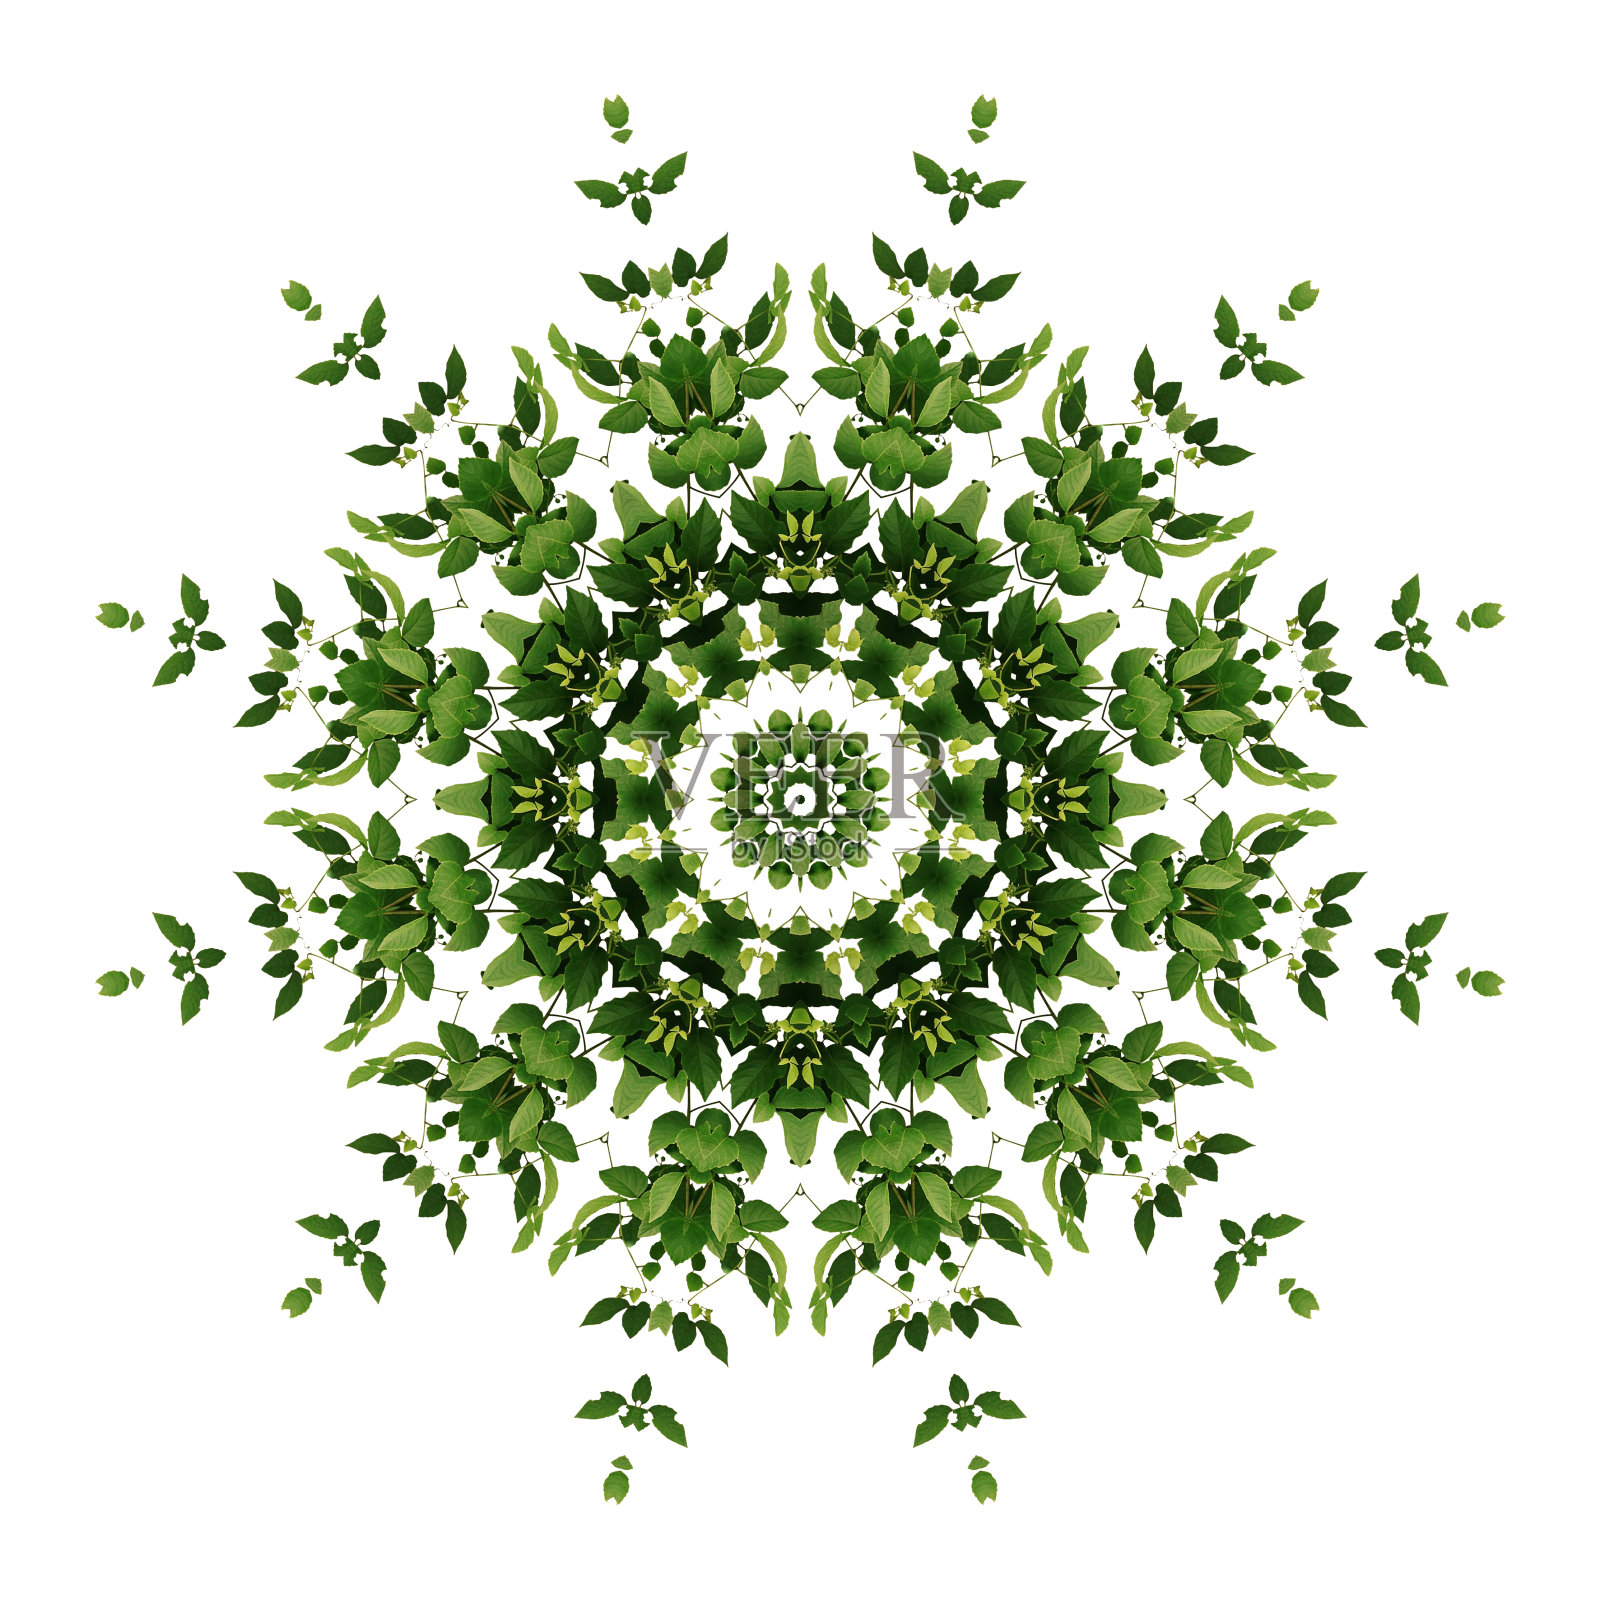 摘要绿色背景植物曼陀罗花纹，野生攀缘藤本植物在白色背景上具有万花筒效应。照片摄影图片